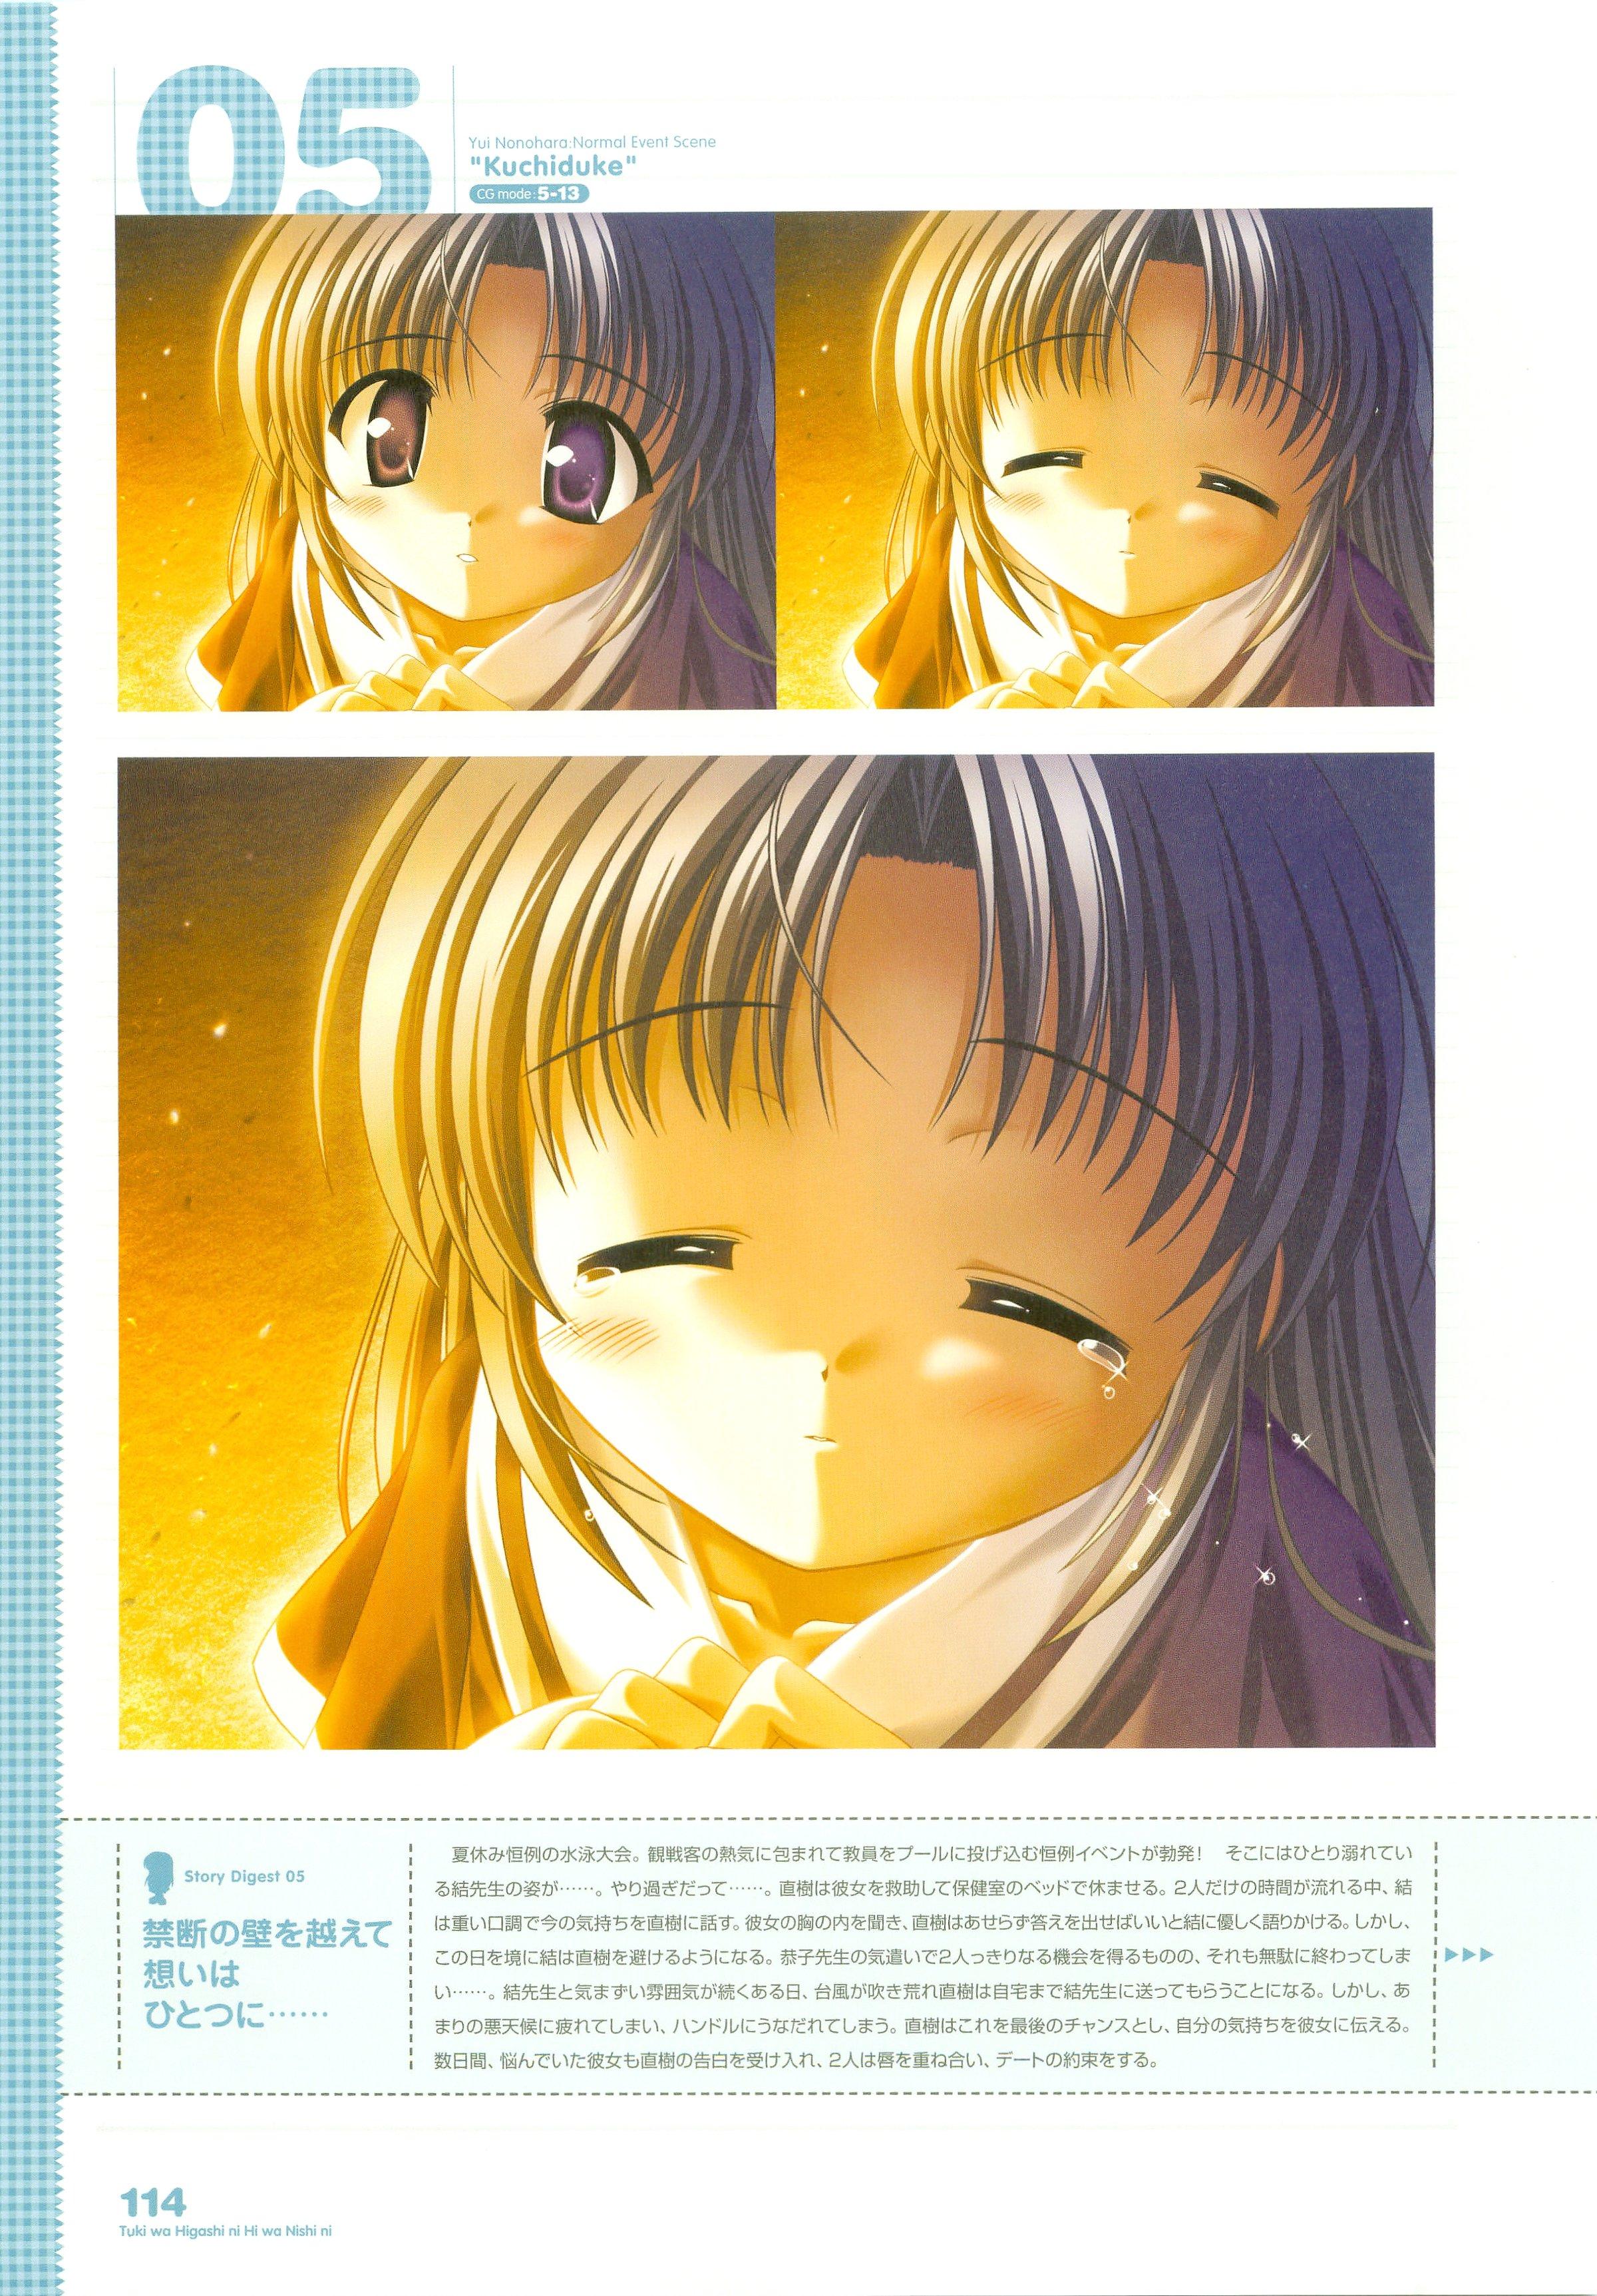 Tsuki wa Higashi ni Hi wa Nishi ni ～ Operation Sanctuary ～ Visual Fan Book 143